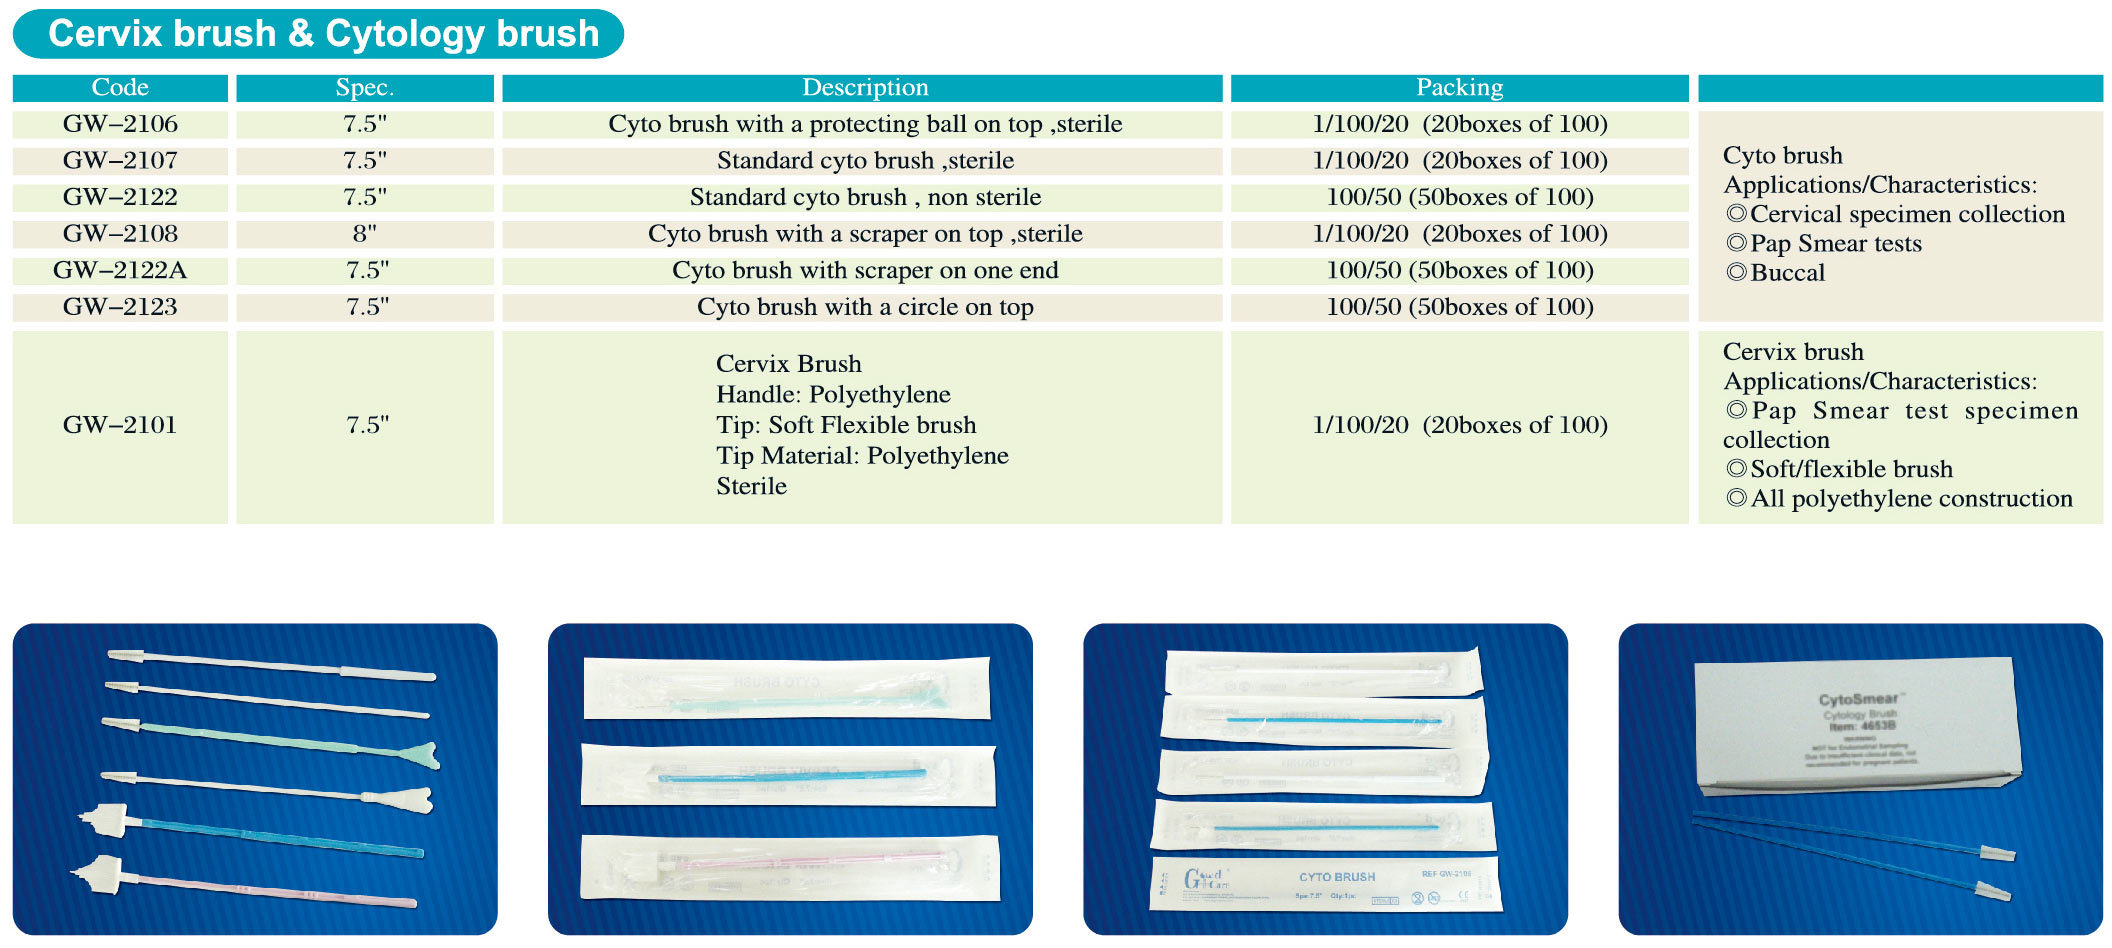 Sterile Cervix Brush Scraper Non-sterile Cytology Brush Soft Flexible Brush Polyethylene Handle